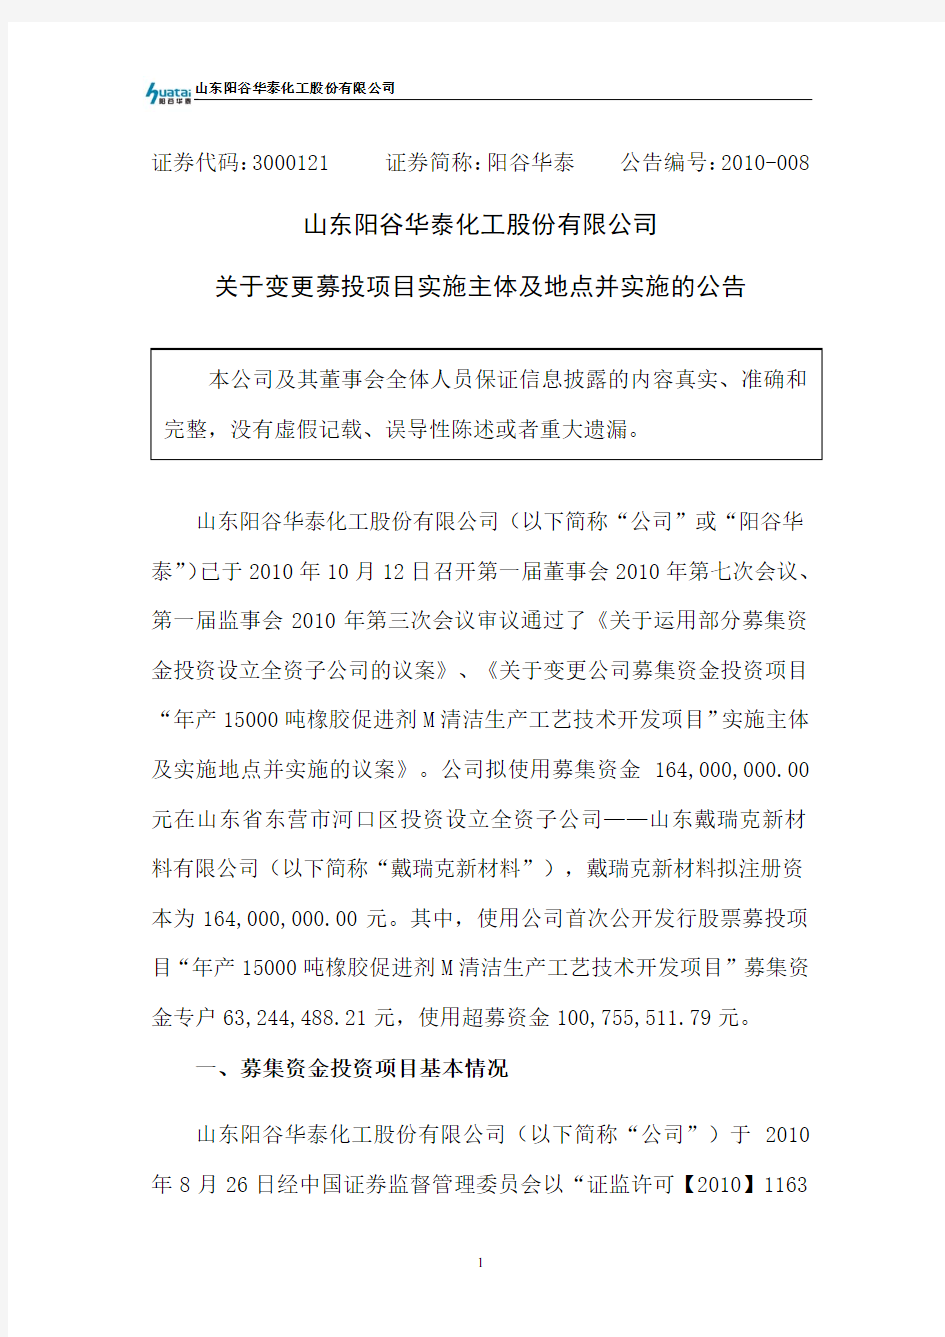 山东阳谷华泰化工股份有限公司关于变更募投项目实施主体及地点并实施的公告